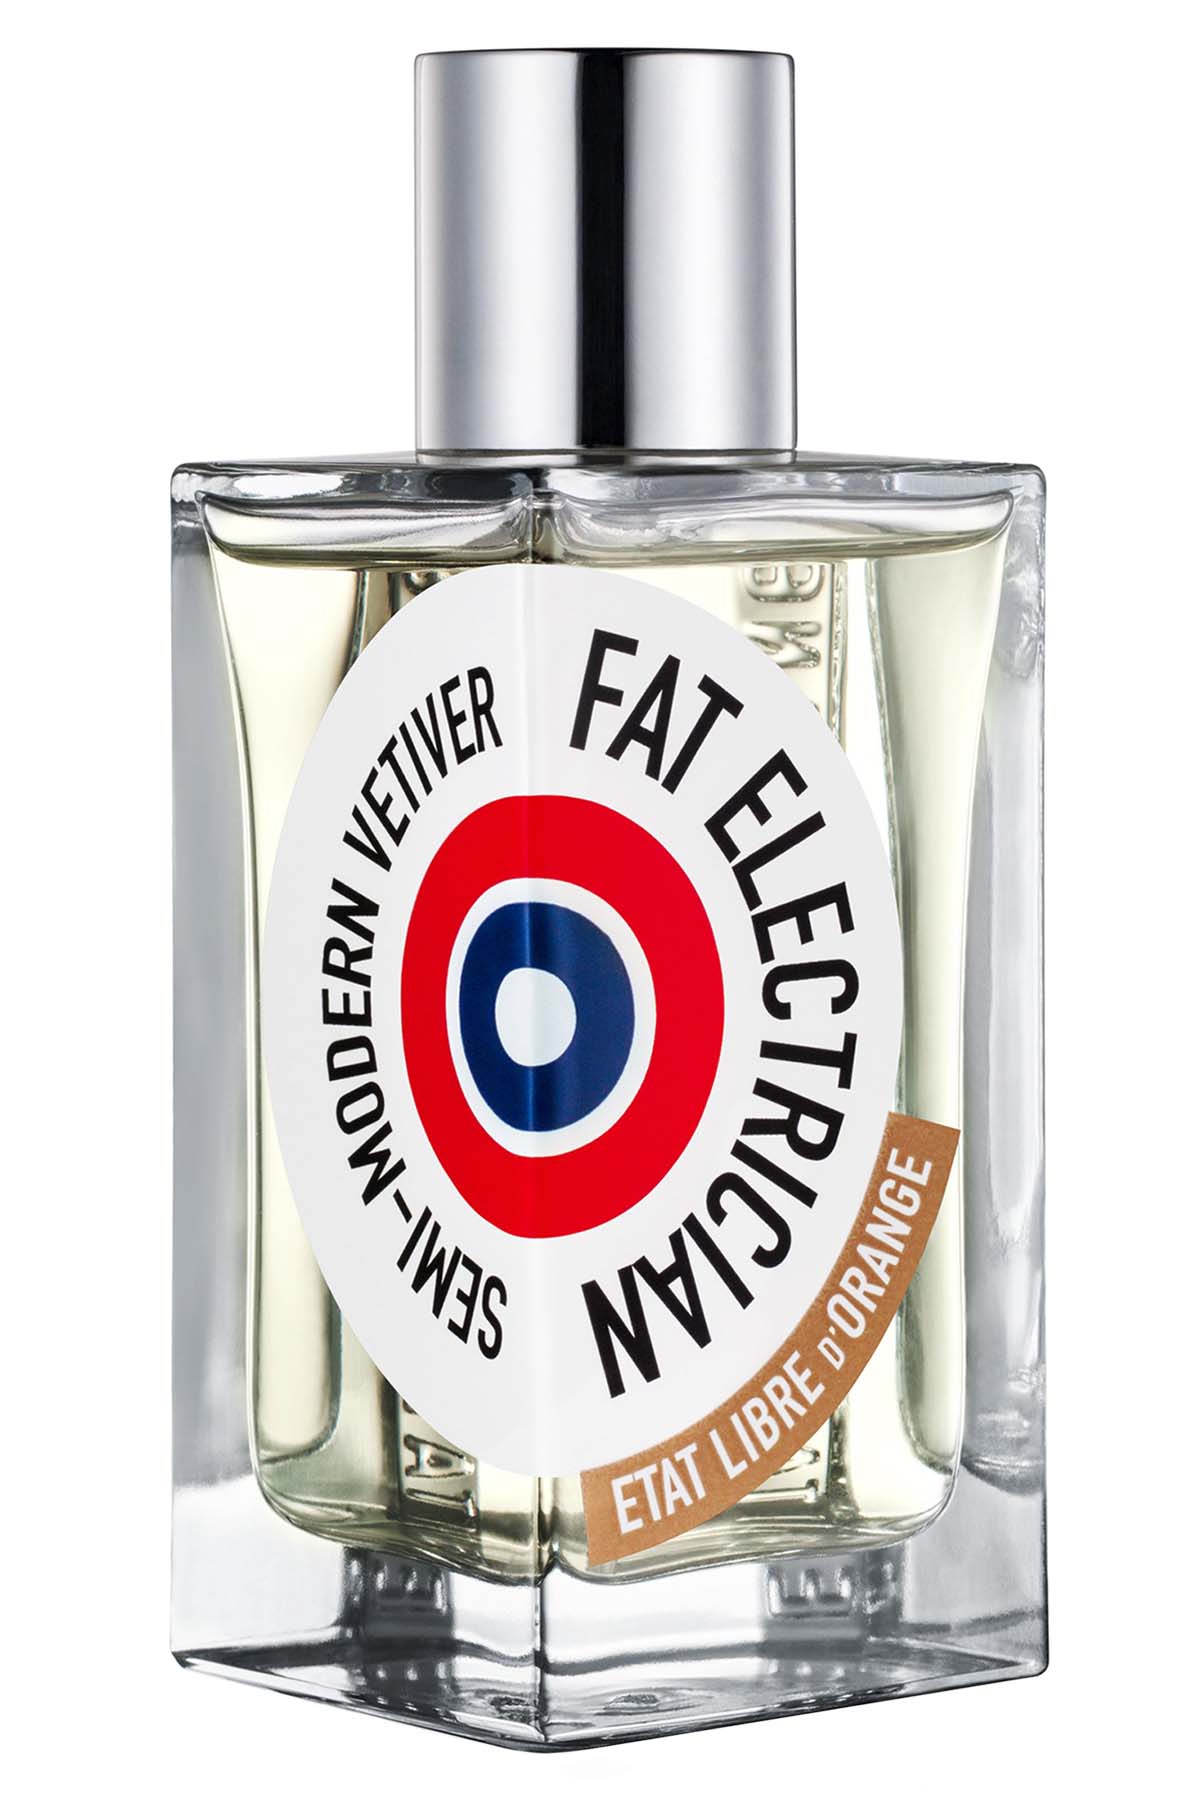 Etat Libre d'Orange Fat Electrician Eau de Parfum 100 ML